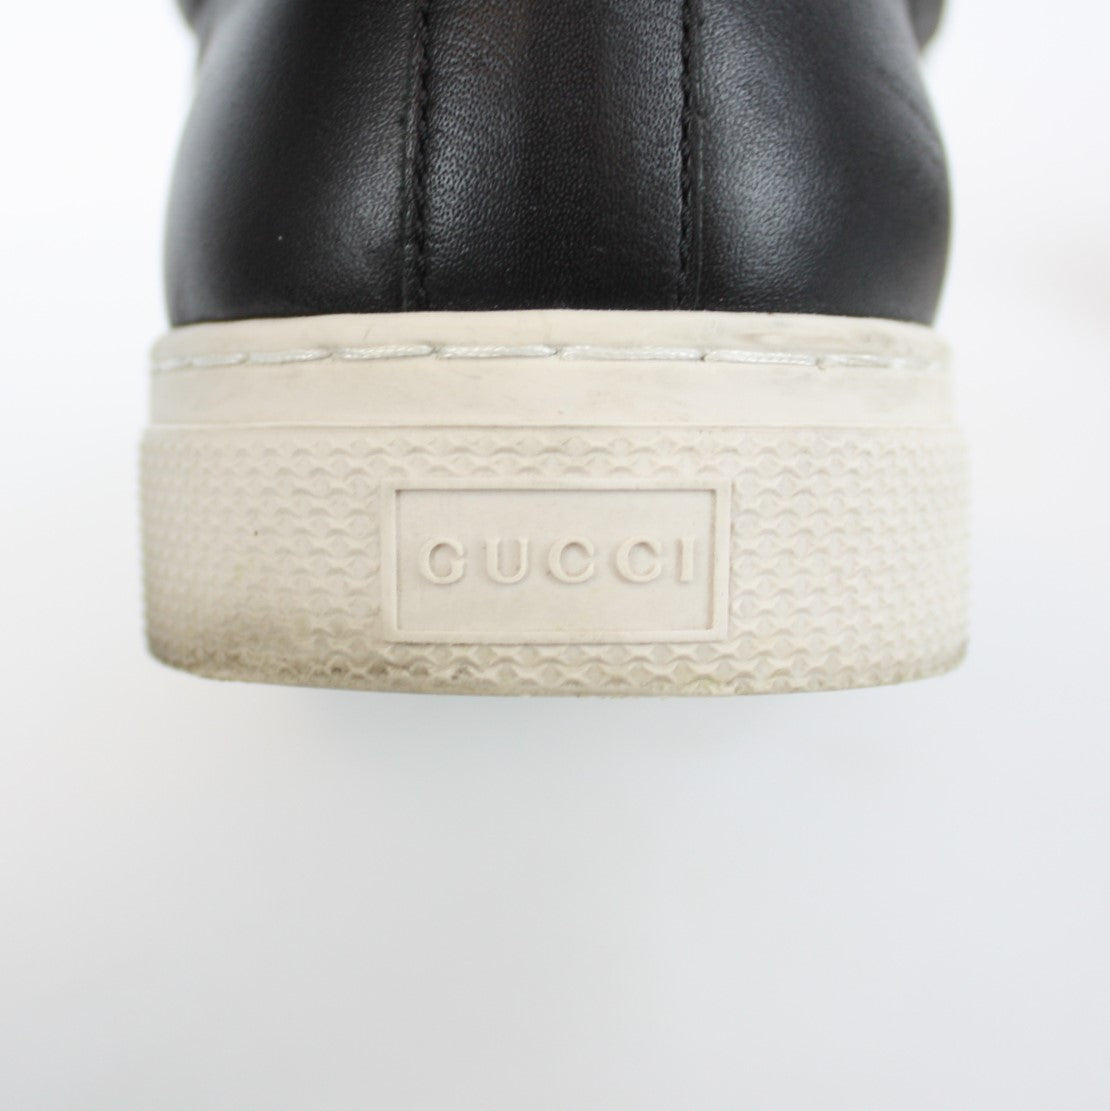 456202 GG Supreme Tiger Slip-on Sneaker Size 6 – Keeks Designer Handbags